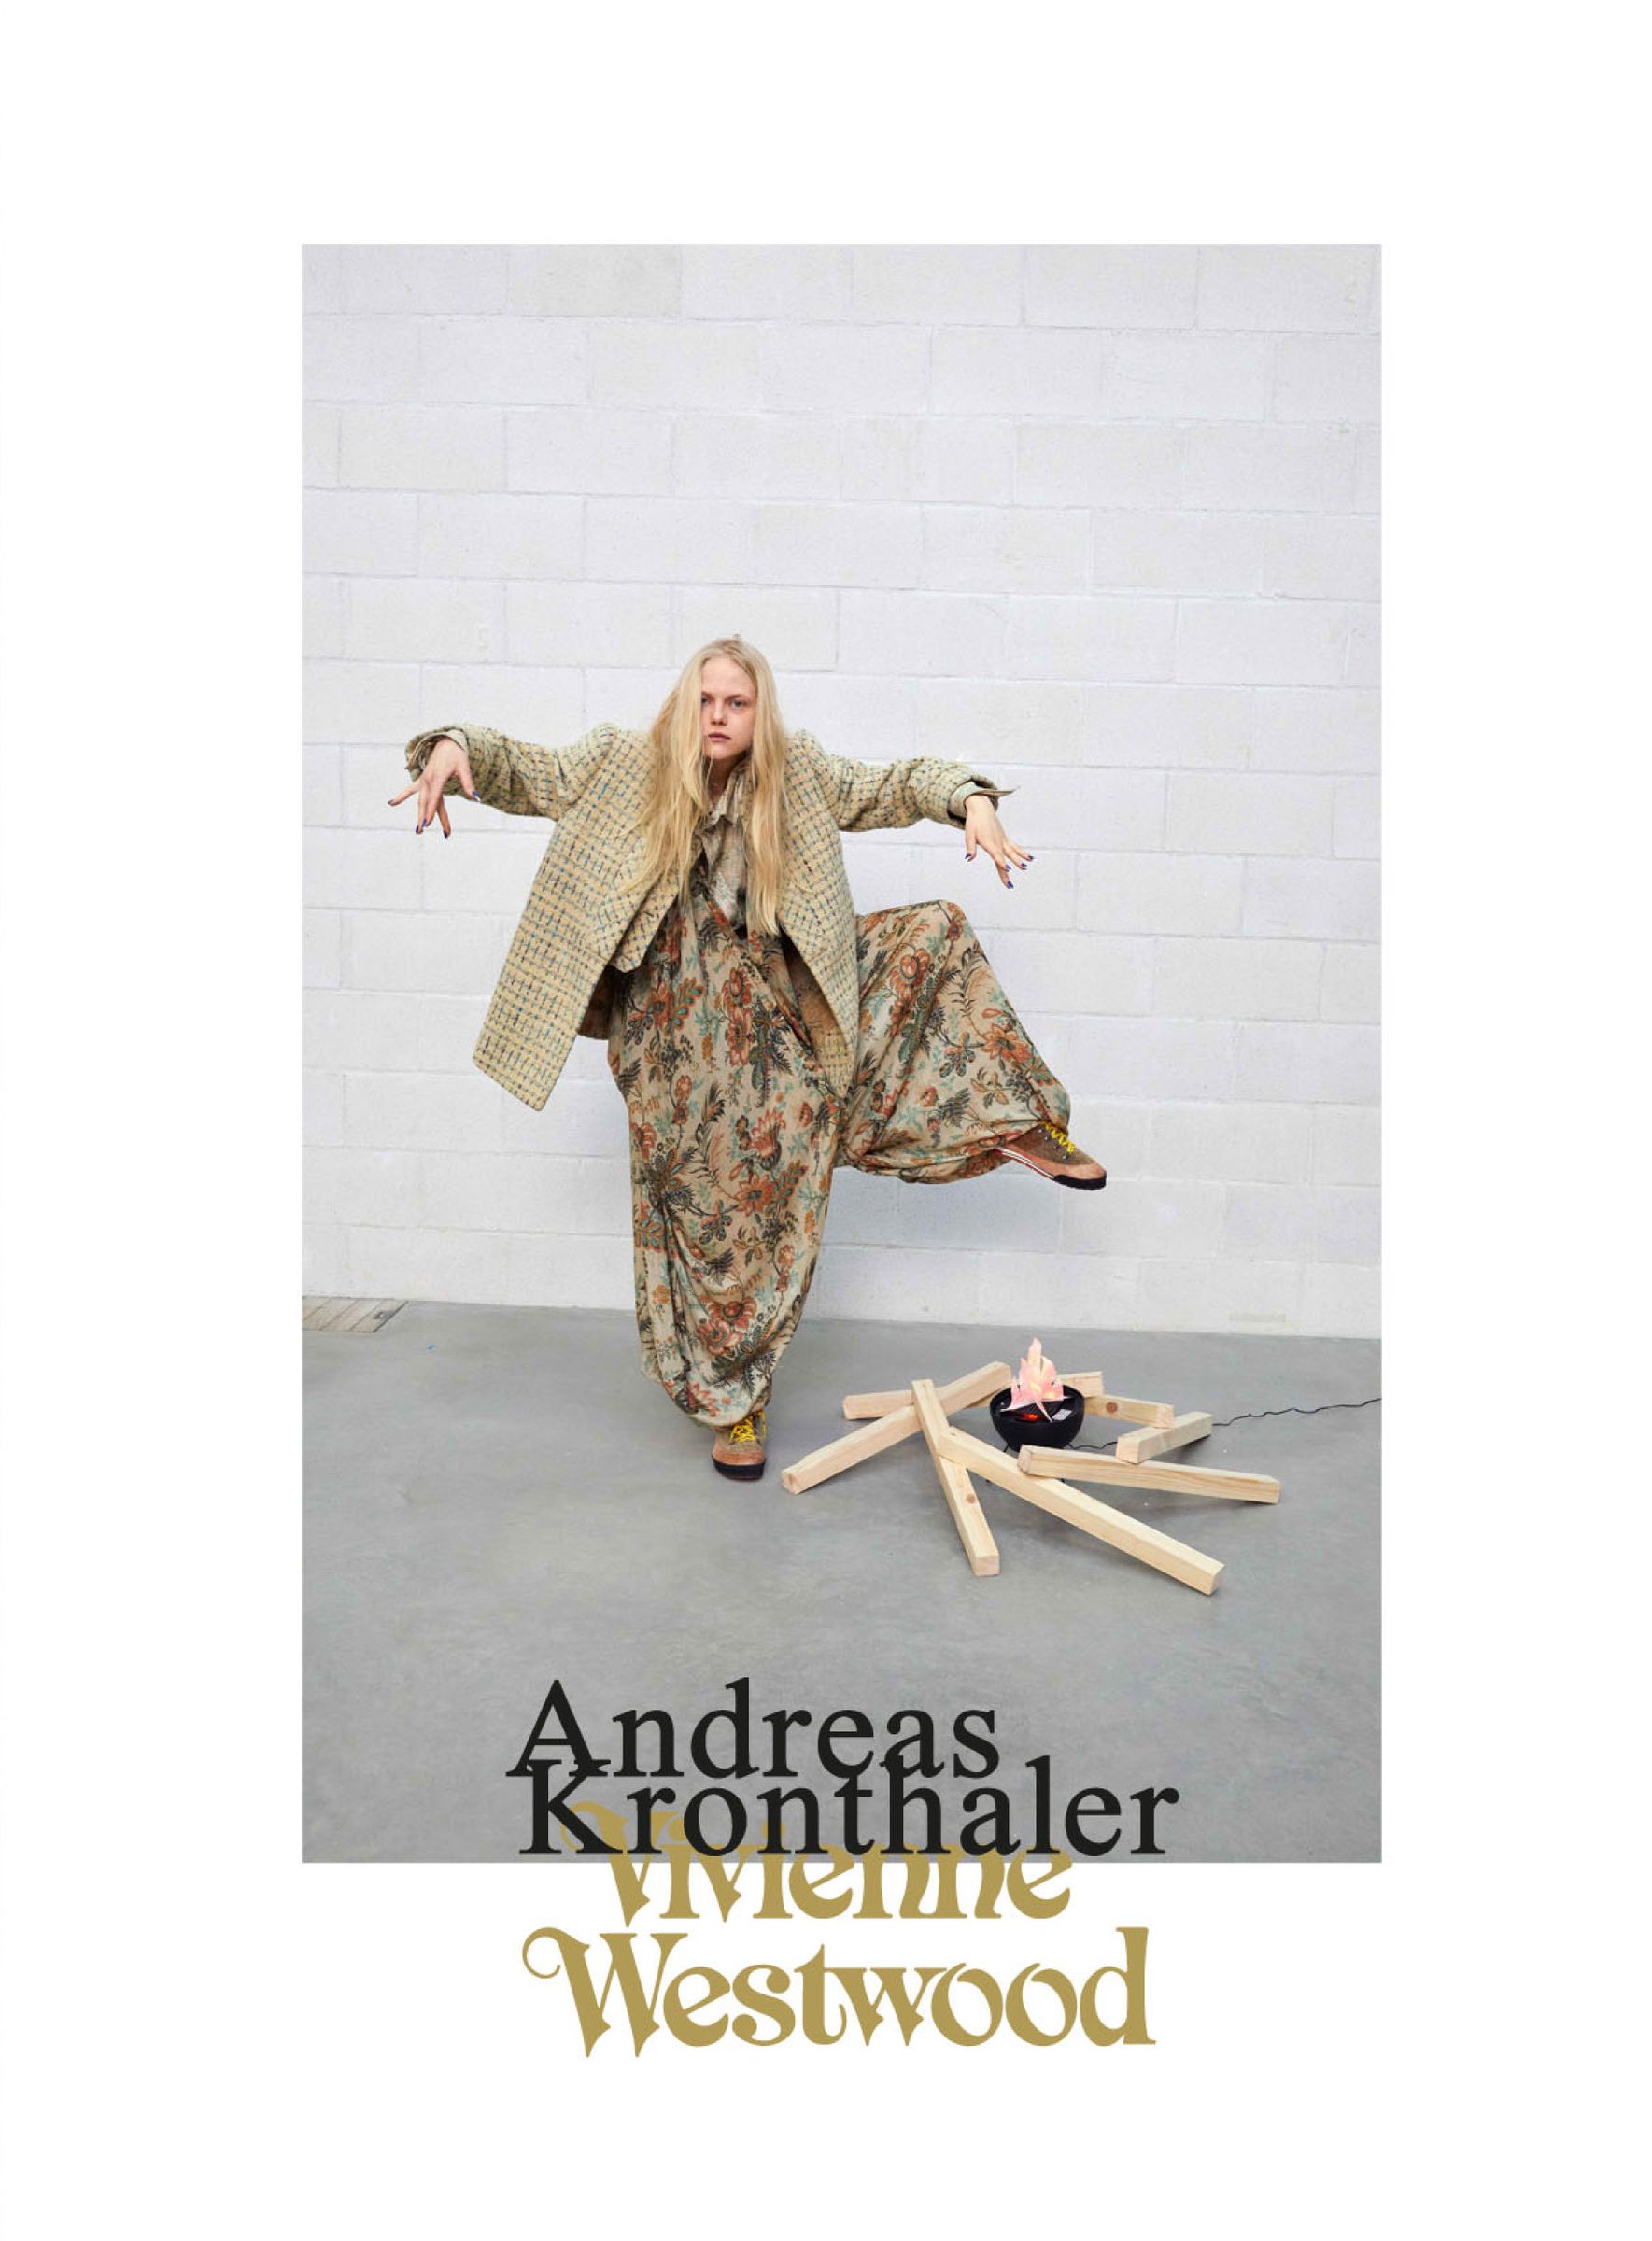 Andreas Kronthaler for Vivienne Westwood F/W 2017-18 - juergen teller styled by Sabina Schreder